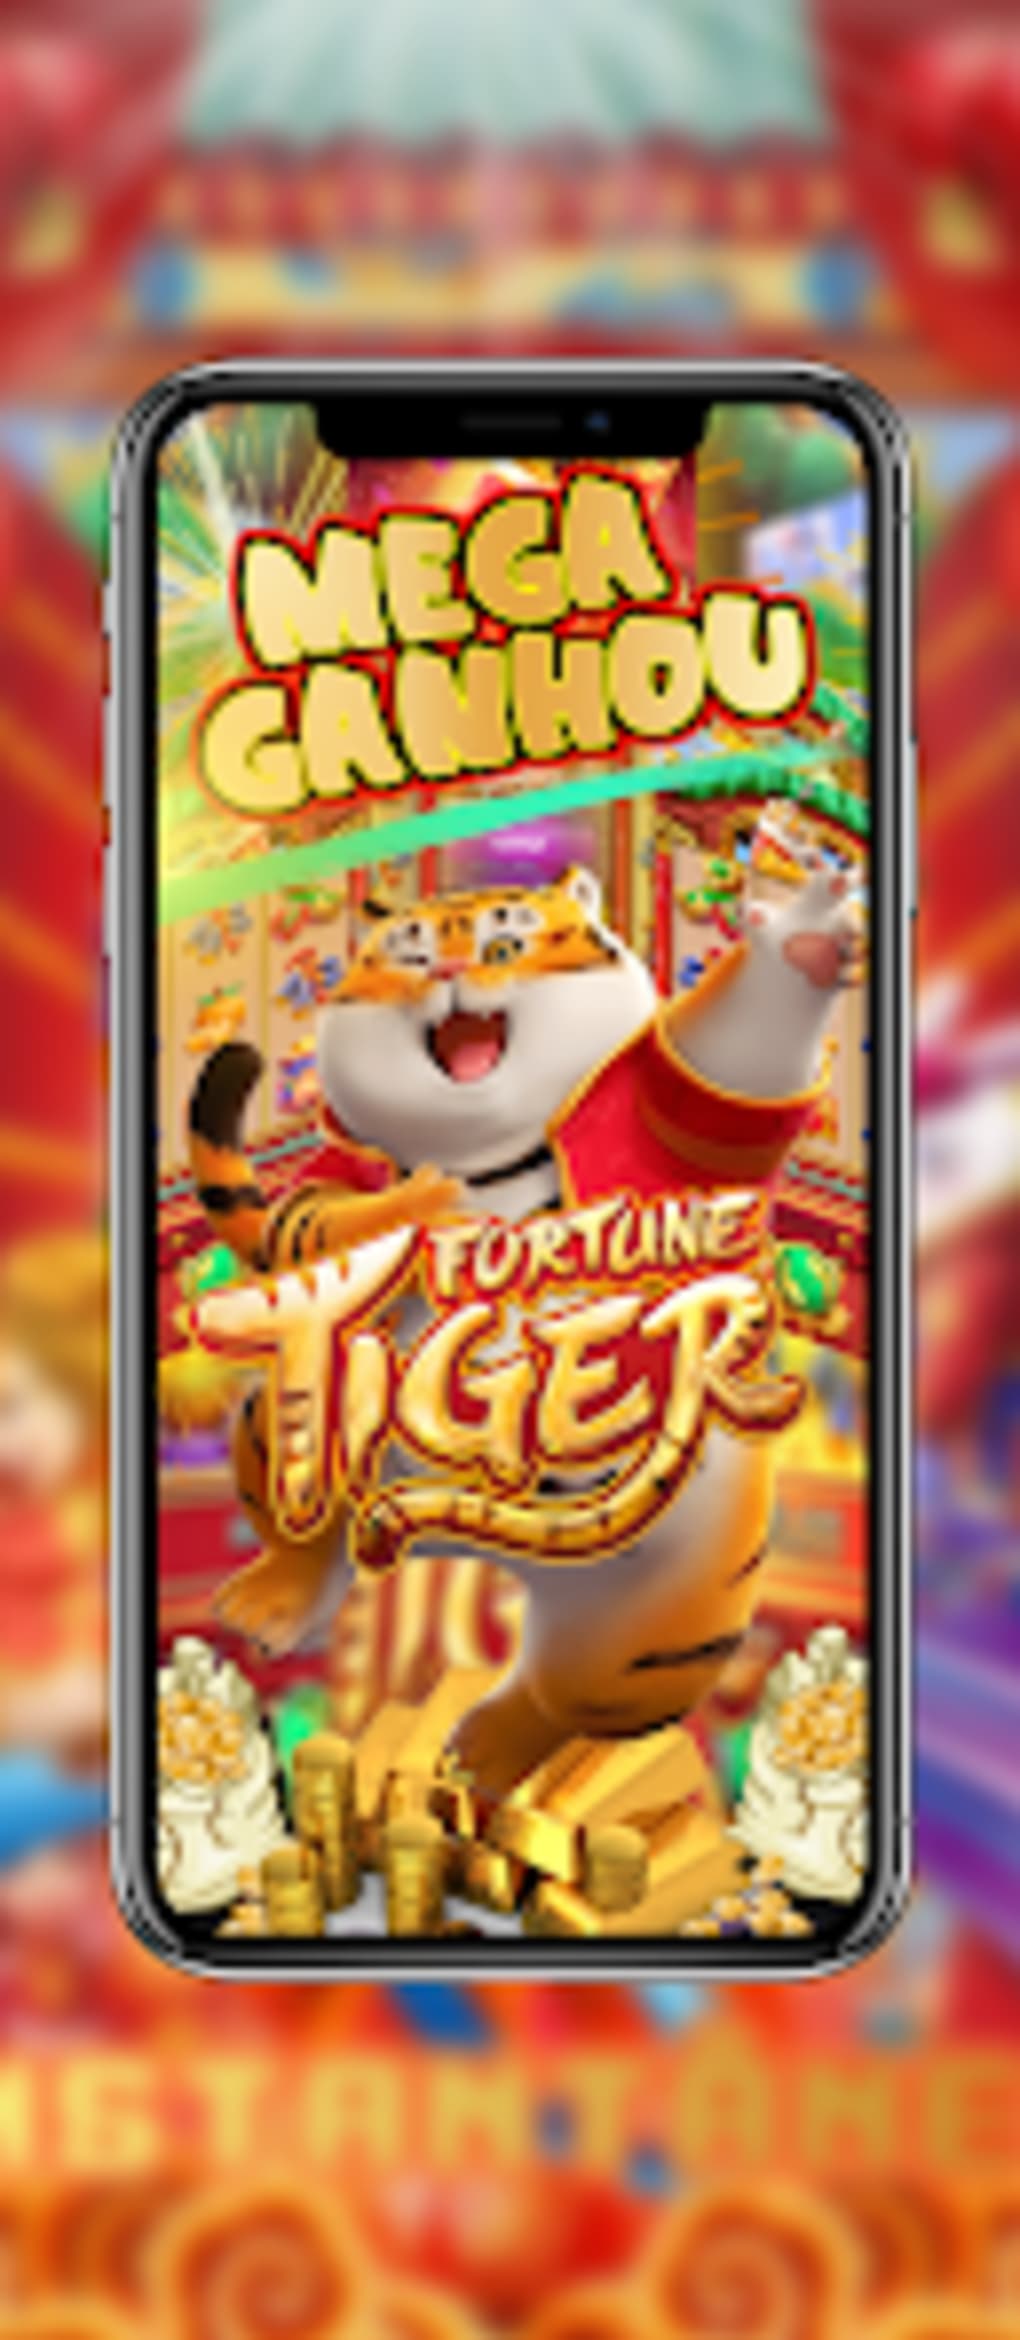 Onde jogar Fortune Tiger: os melhores cassinos - Tribo Gamer